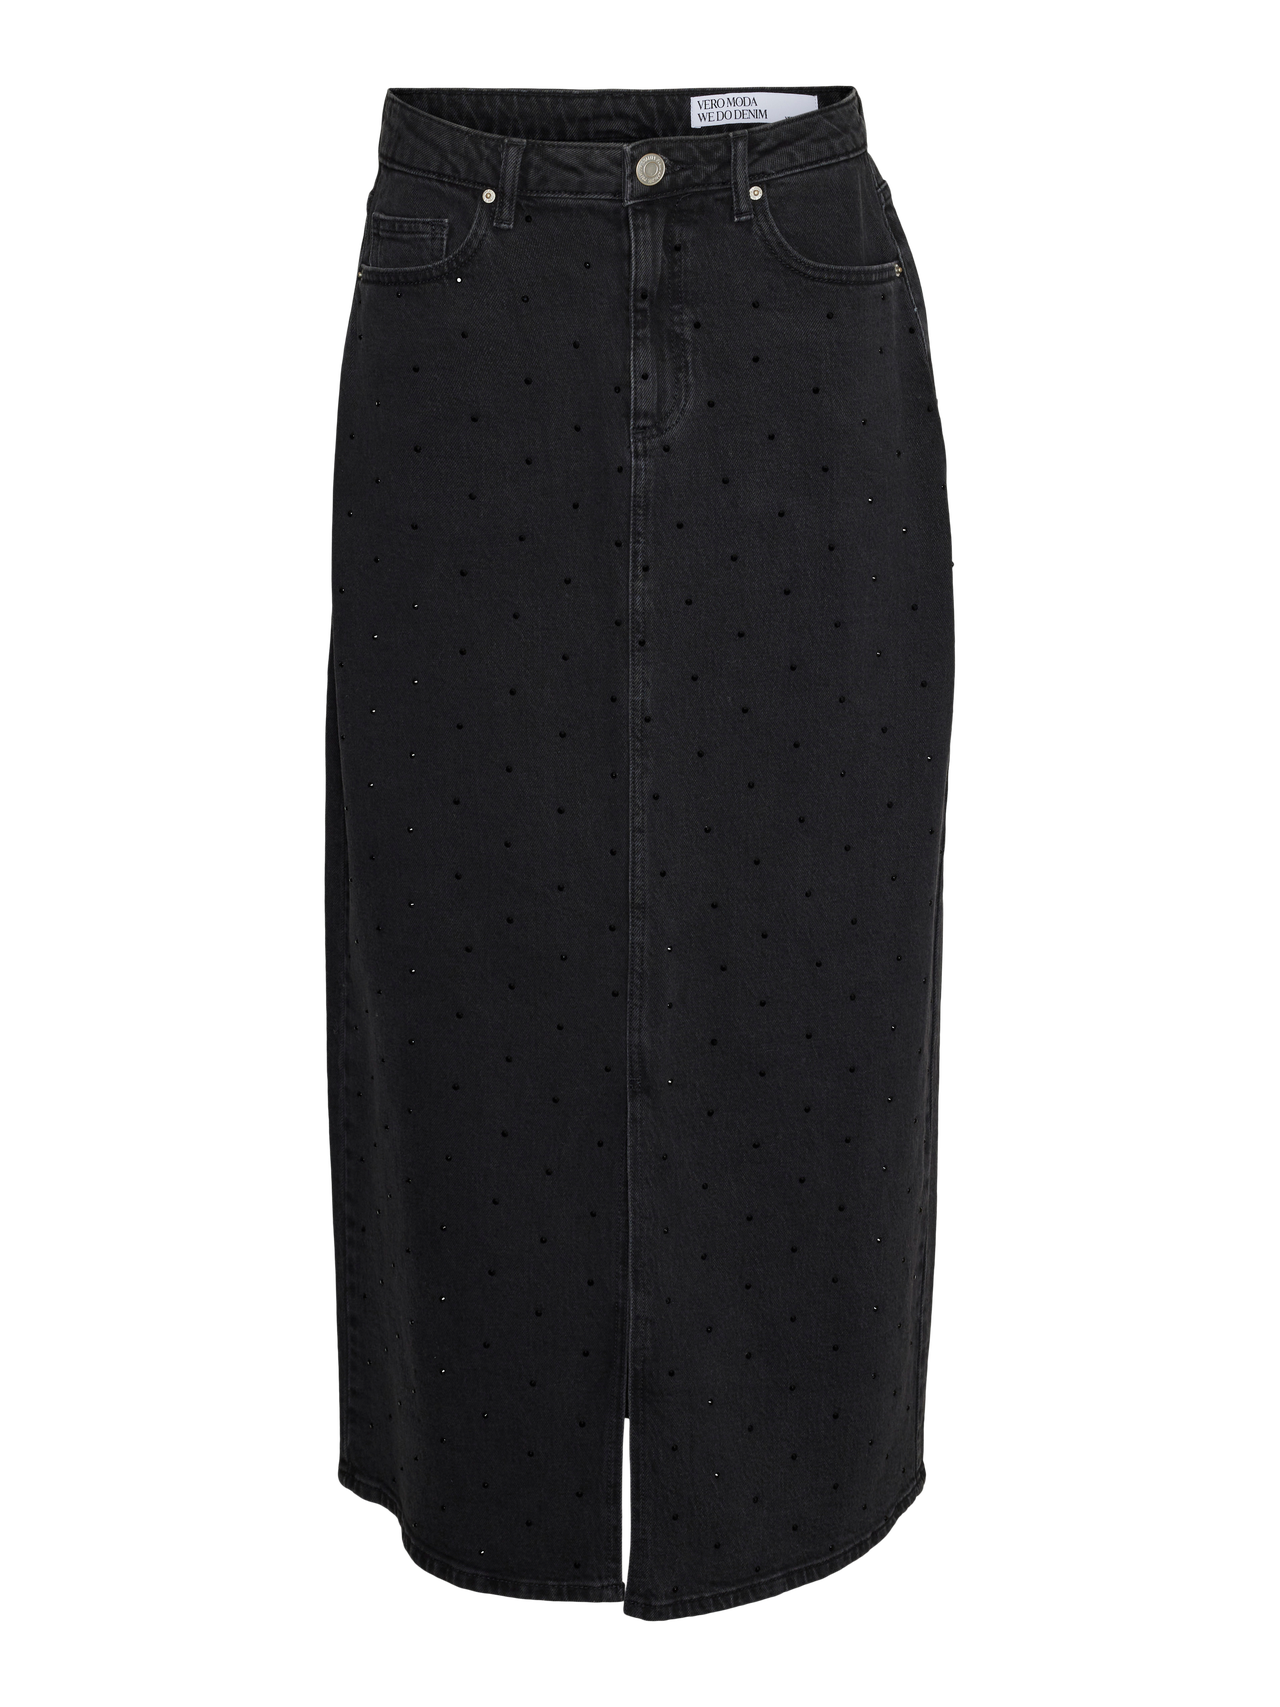 Vero Moda VMTESSA Long skirt -Black Denim - 10313985